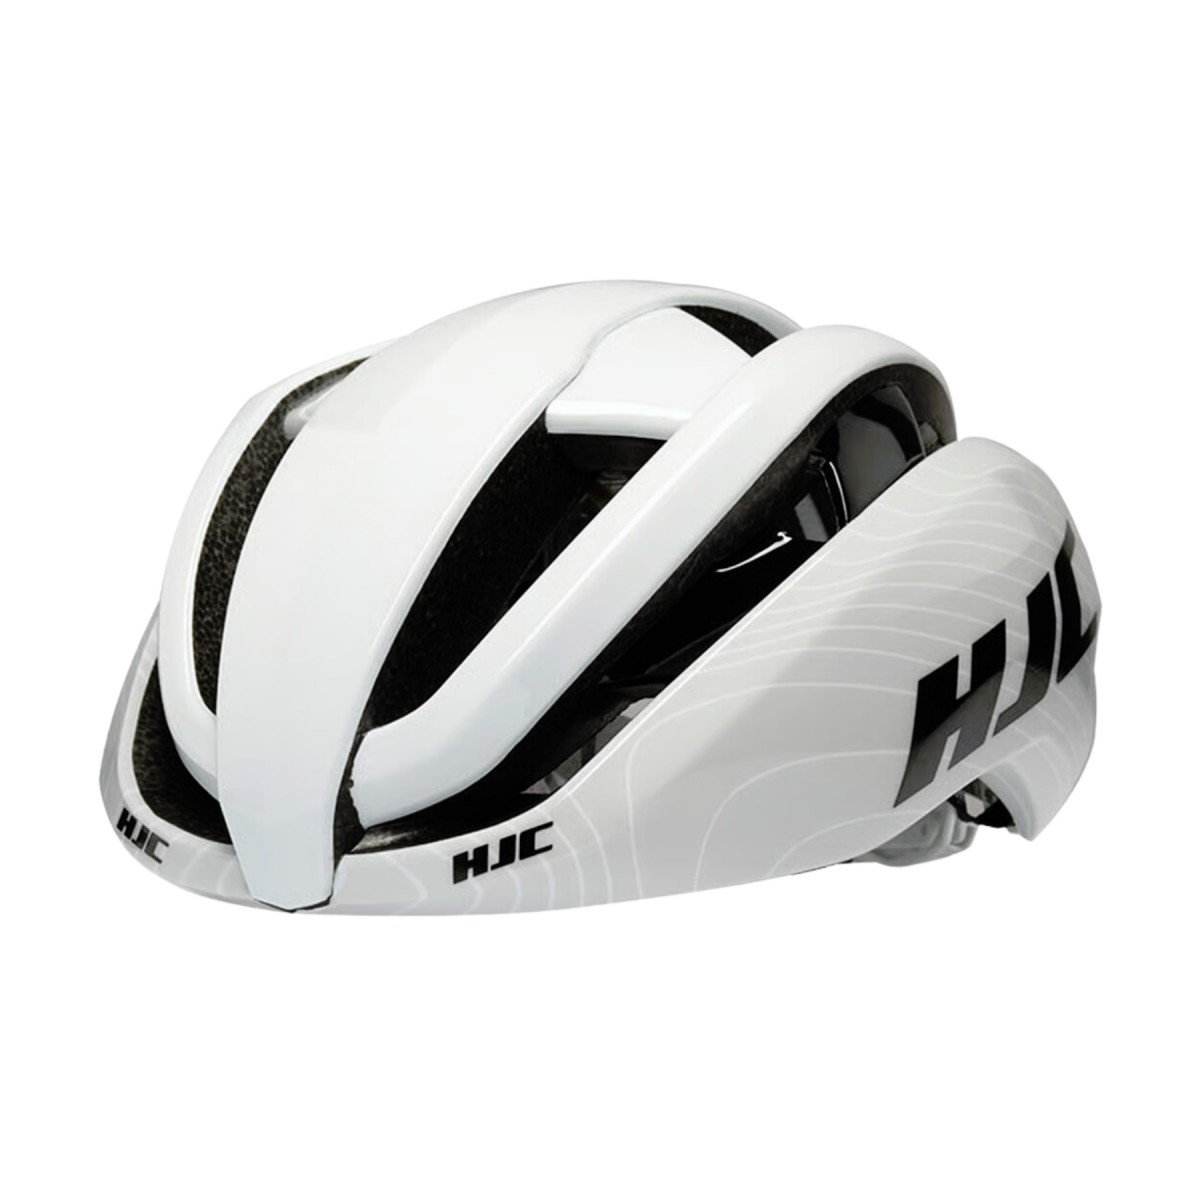 Bequemer günstig Kaufen-HJC Ibex 2.0 Helm Weiß Grau, Größe L. HJC Ibex 2.0 Helm Weiß Grau, Größe L <![CDATA[HJC Ibex 2.0 Helm Weiß Grau
 Der HJC Ibex 2.0 Helm ist ein ultraleichter und bequemer Helm, der für optimale Belüftung sorgt.